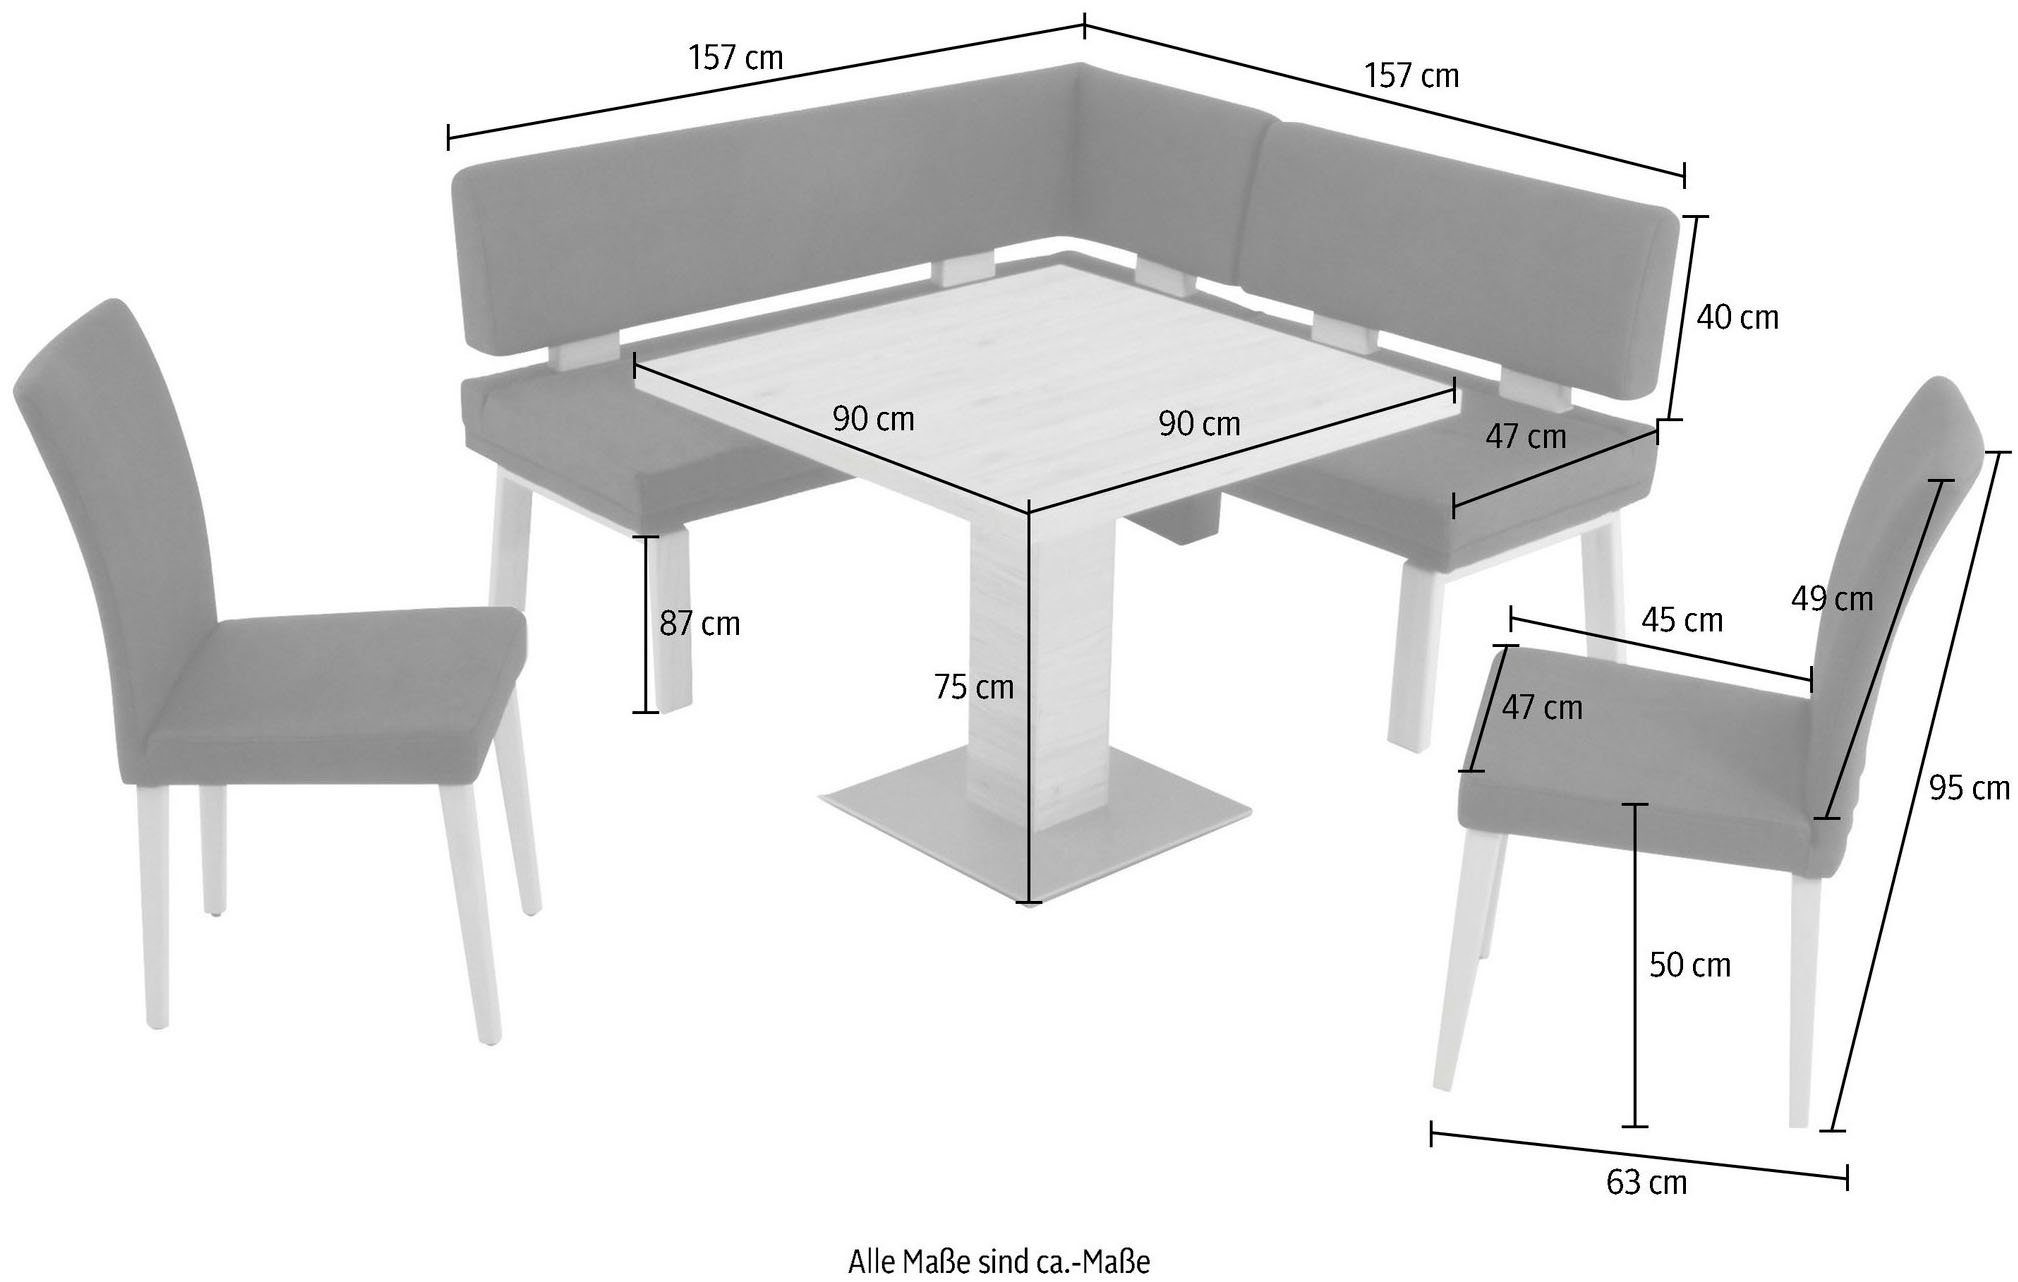 K+W Komfort & Wohnen Eckbankgruppe »Santos I«, gleichschenklig 157cm, zwei 4-Fußholzstühle und Tisch 90x90cm in SanRemo Eiche lackiert-HomeTrends